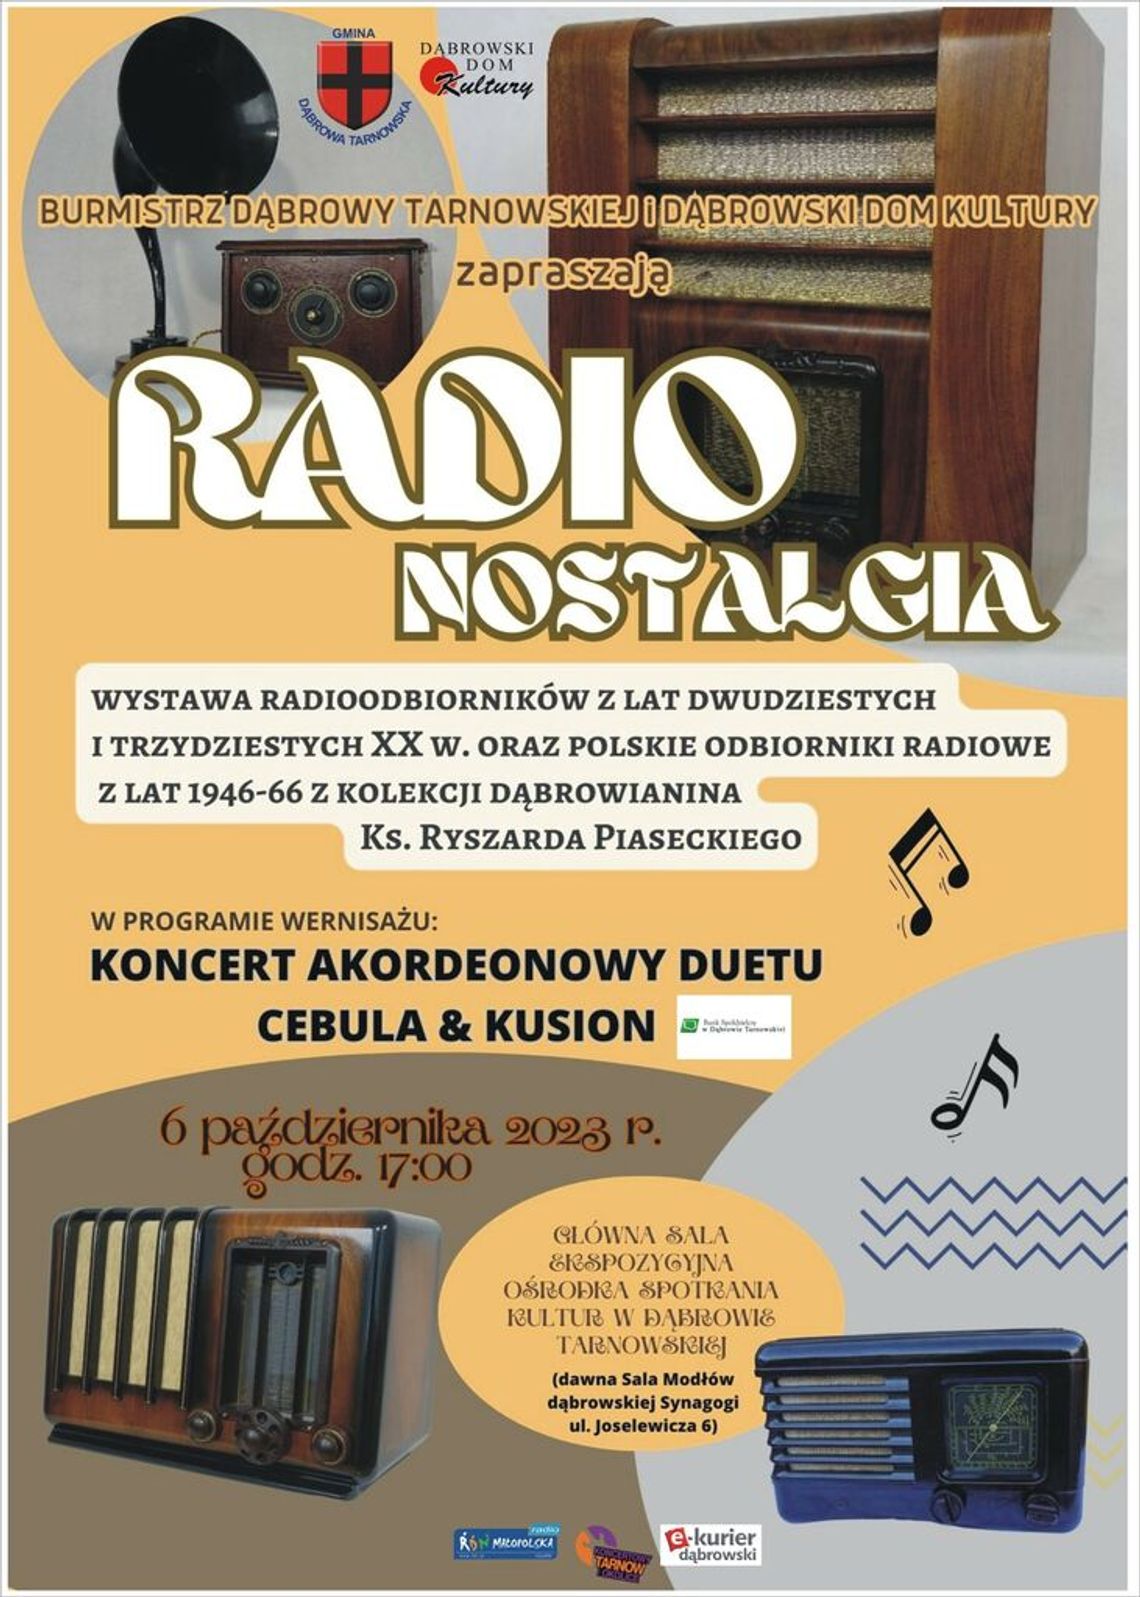 Historyczna chwila - wernisaż wystawy "Radio Nostalgia"